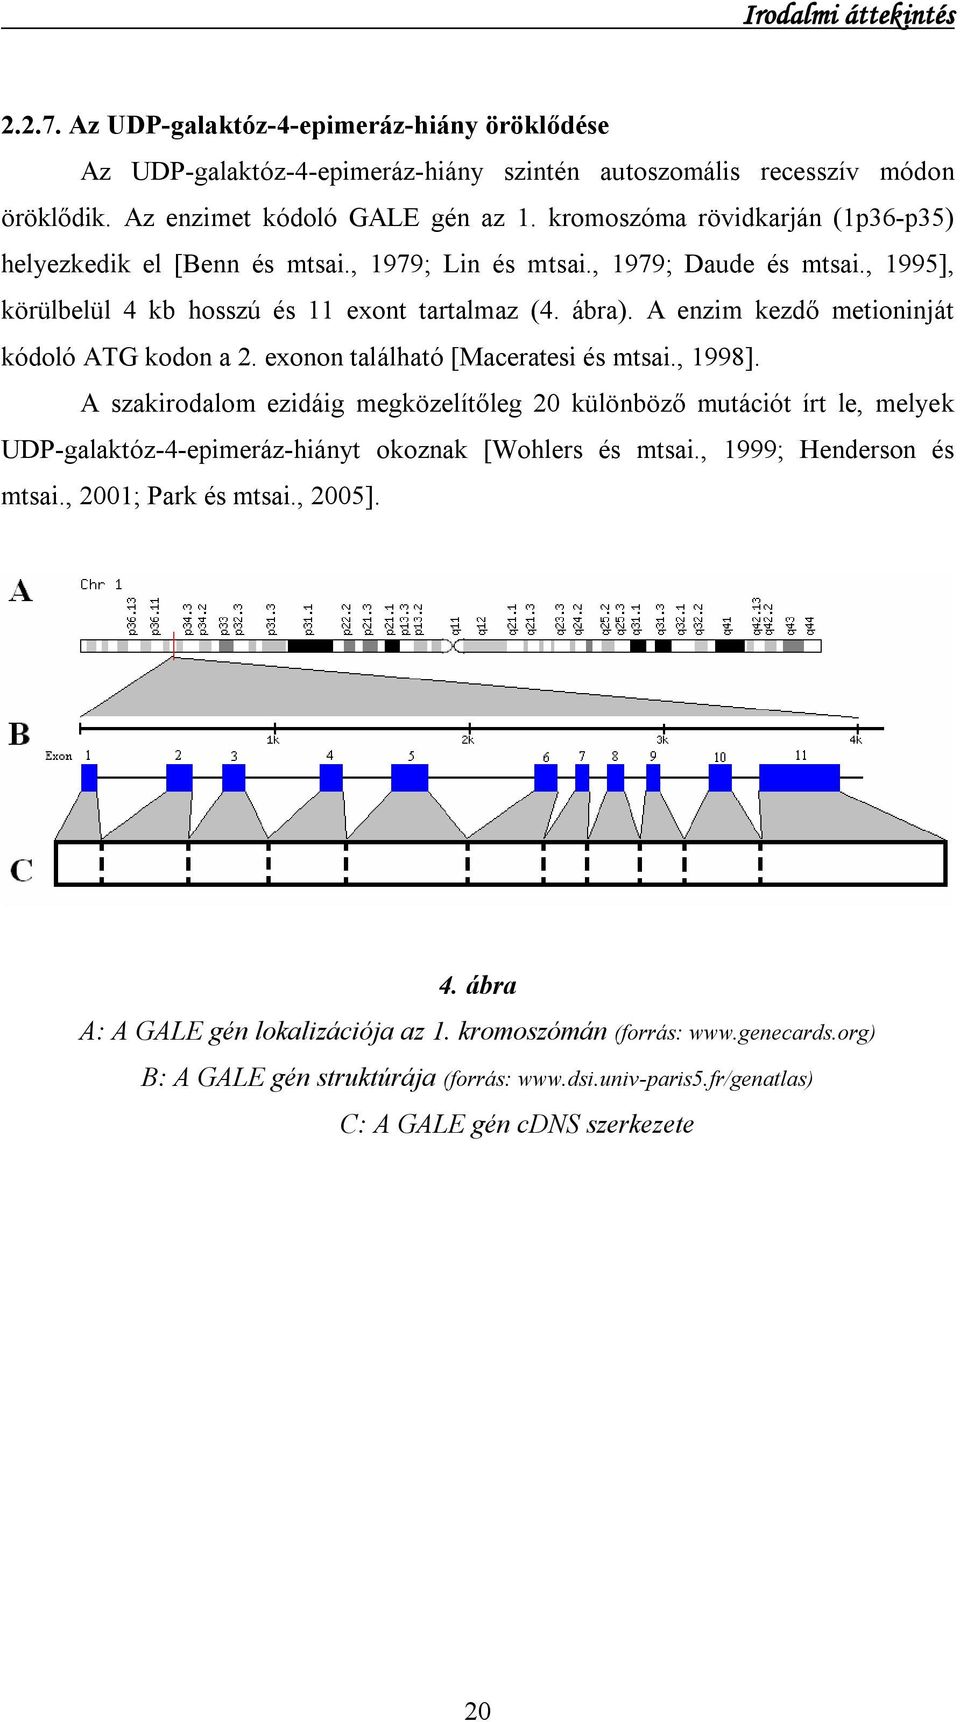 A enzim kezdő metioninját kódoló ATG kodon a 2. exonon található [Maceratesi és mtsai., 1998].